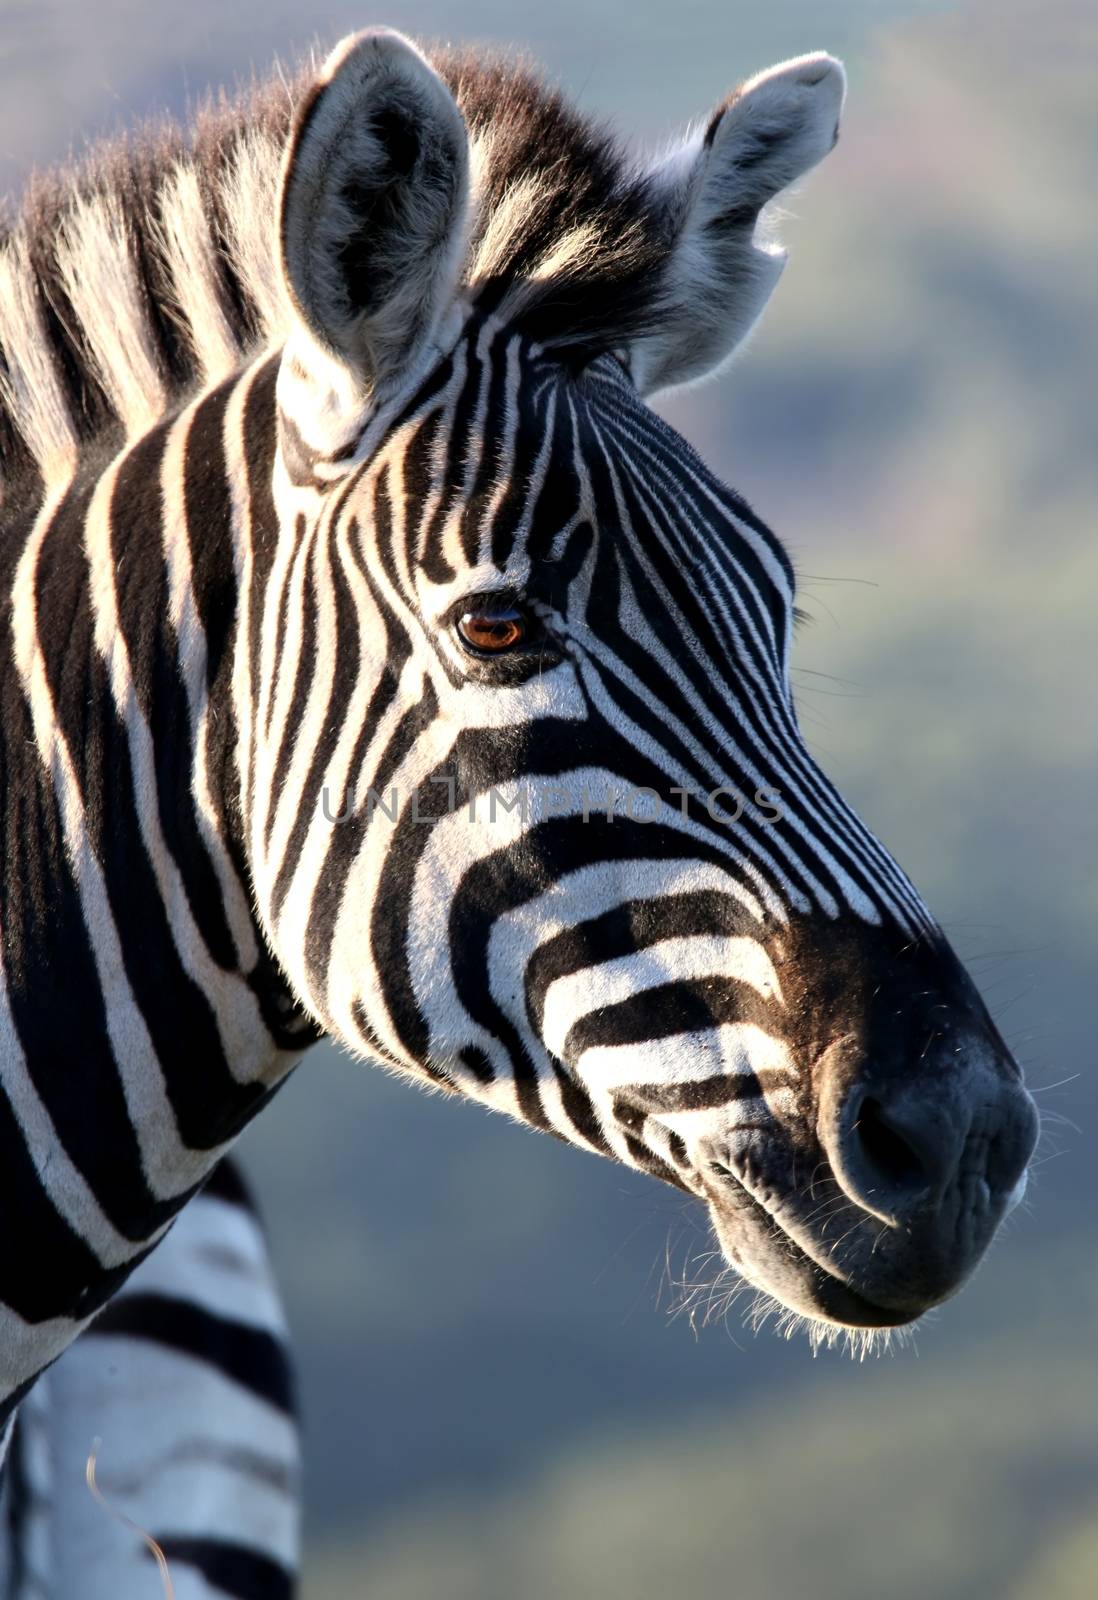 Zebra Portrait by fouroaks